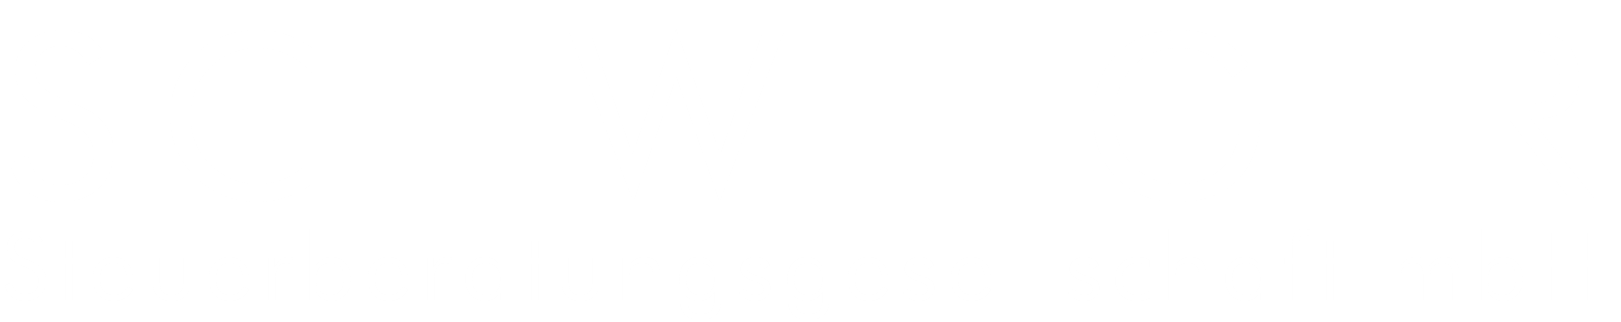 Schweiger Steuerberatung Logo weiß